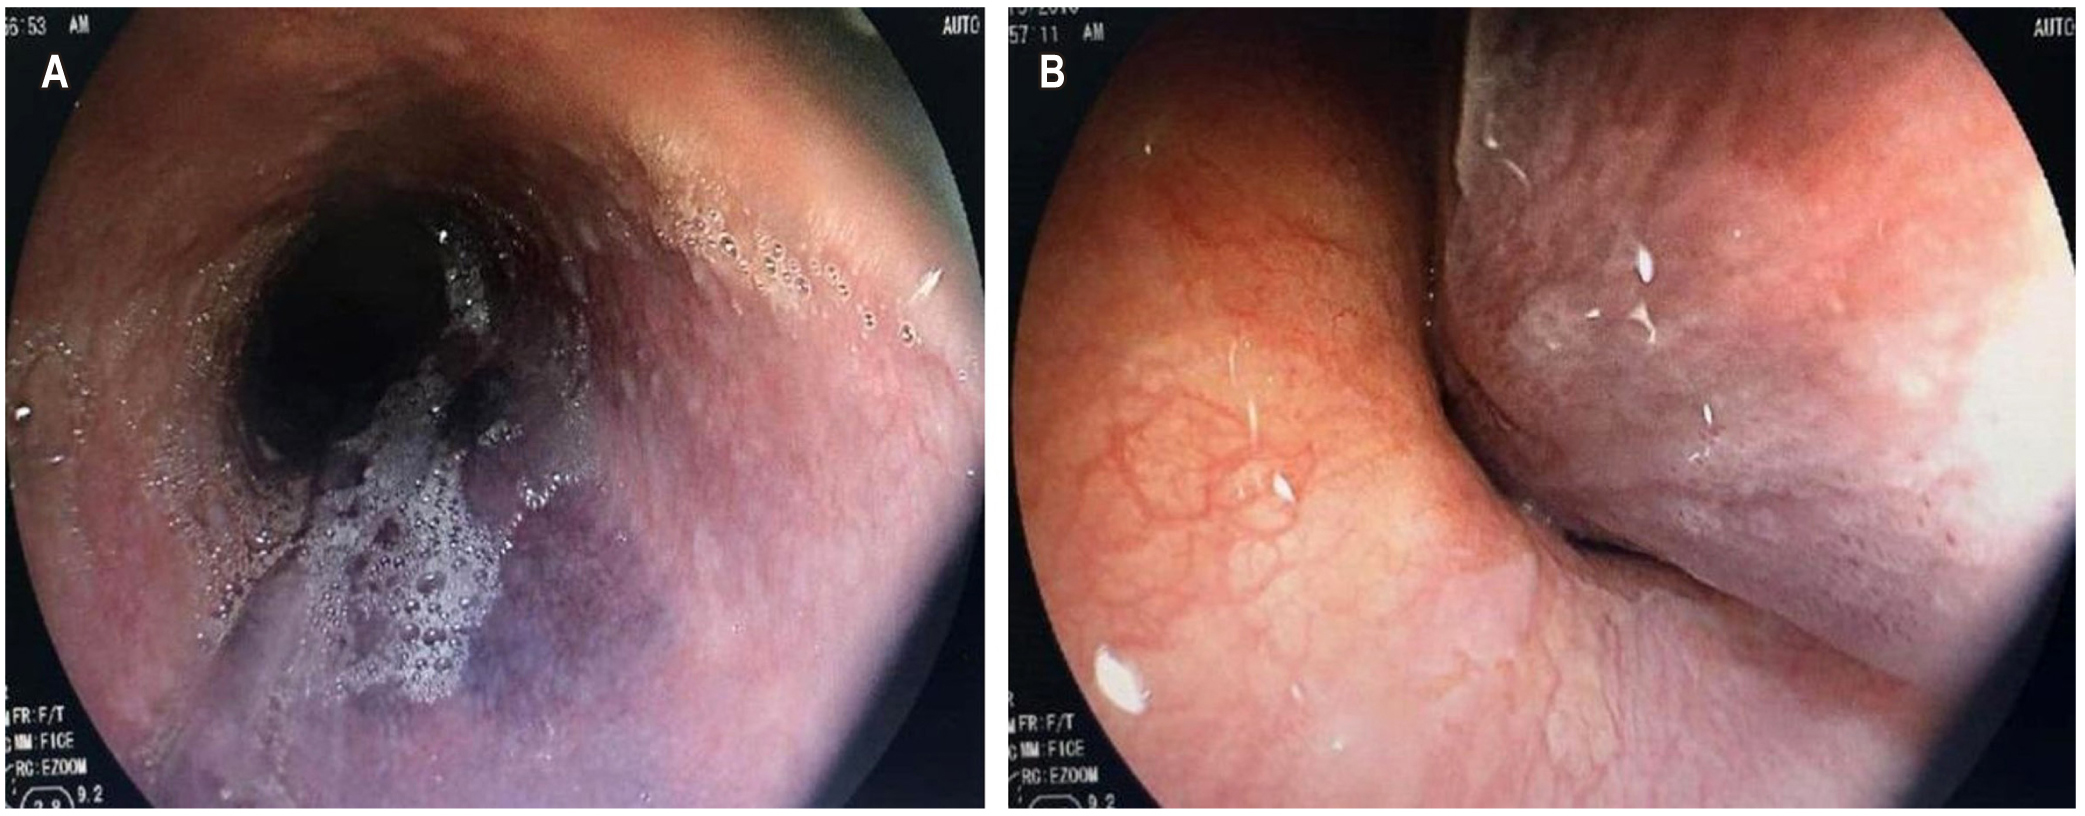 Figura 2. A. EVDA: esófago-hematoma; B. Hematoma de la pared lateral izquierda que se extiende hasta el cardias, condicionando la compresión intraluminal